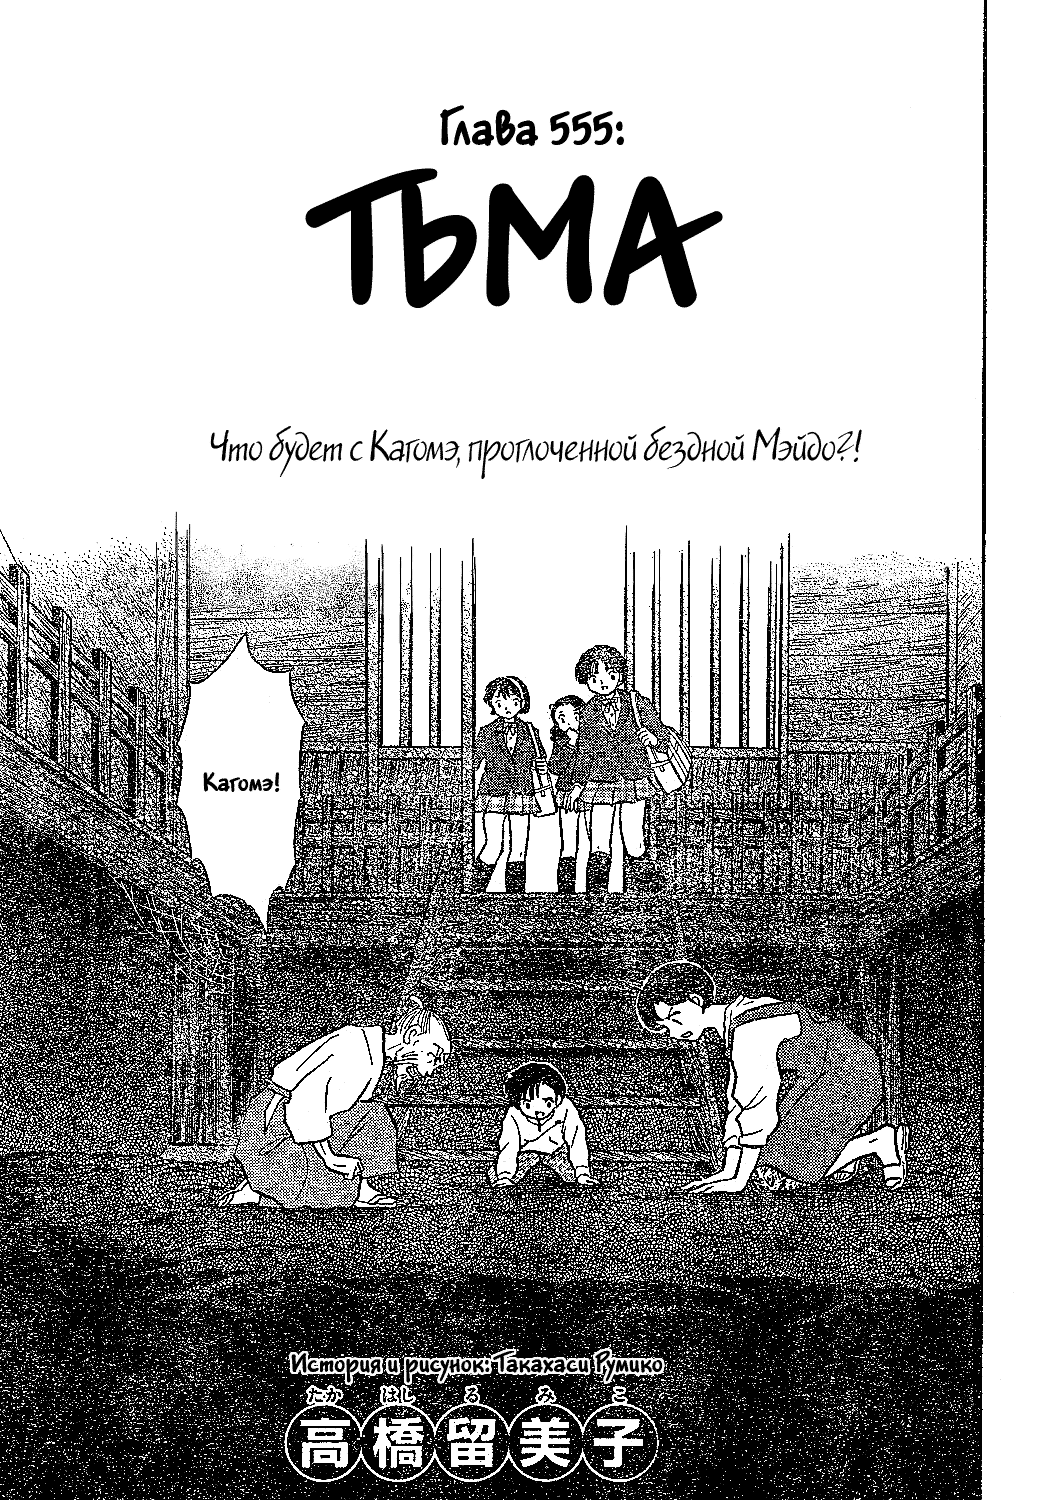 Инуяша 56 - 555 Тьма